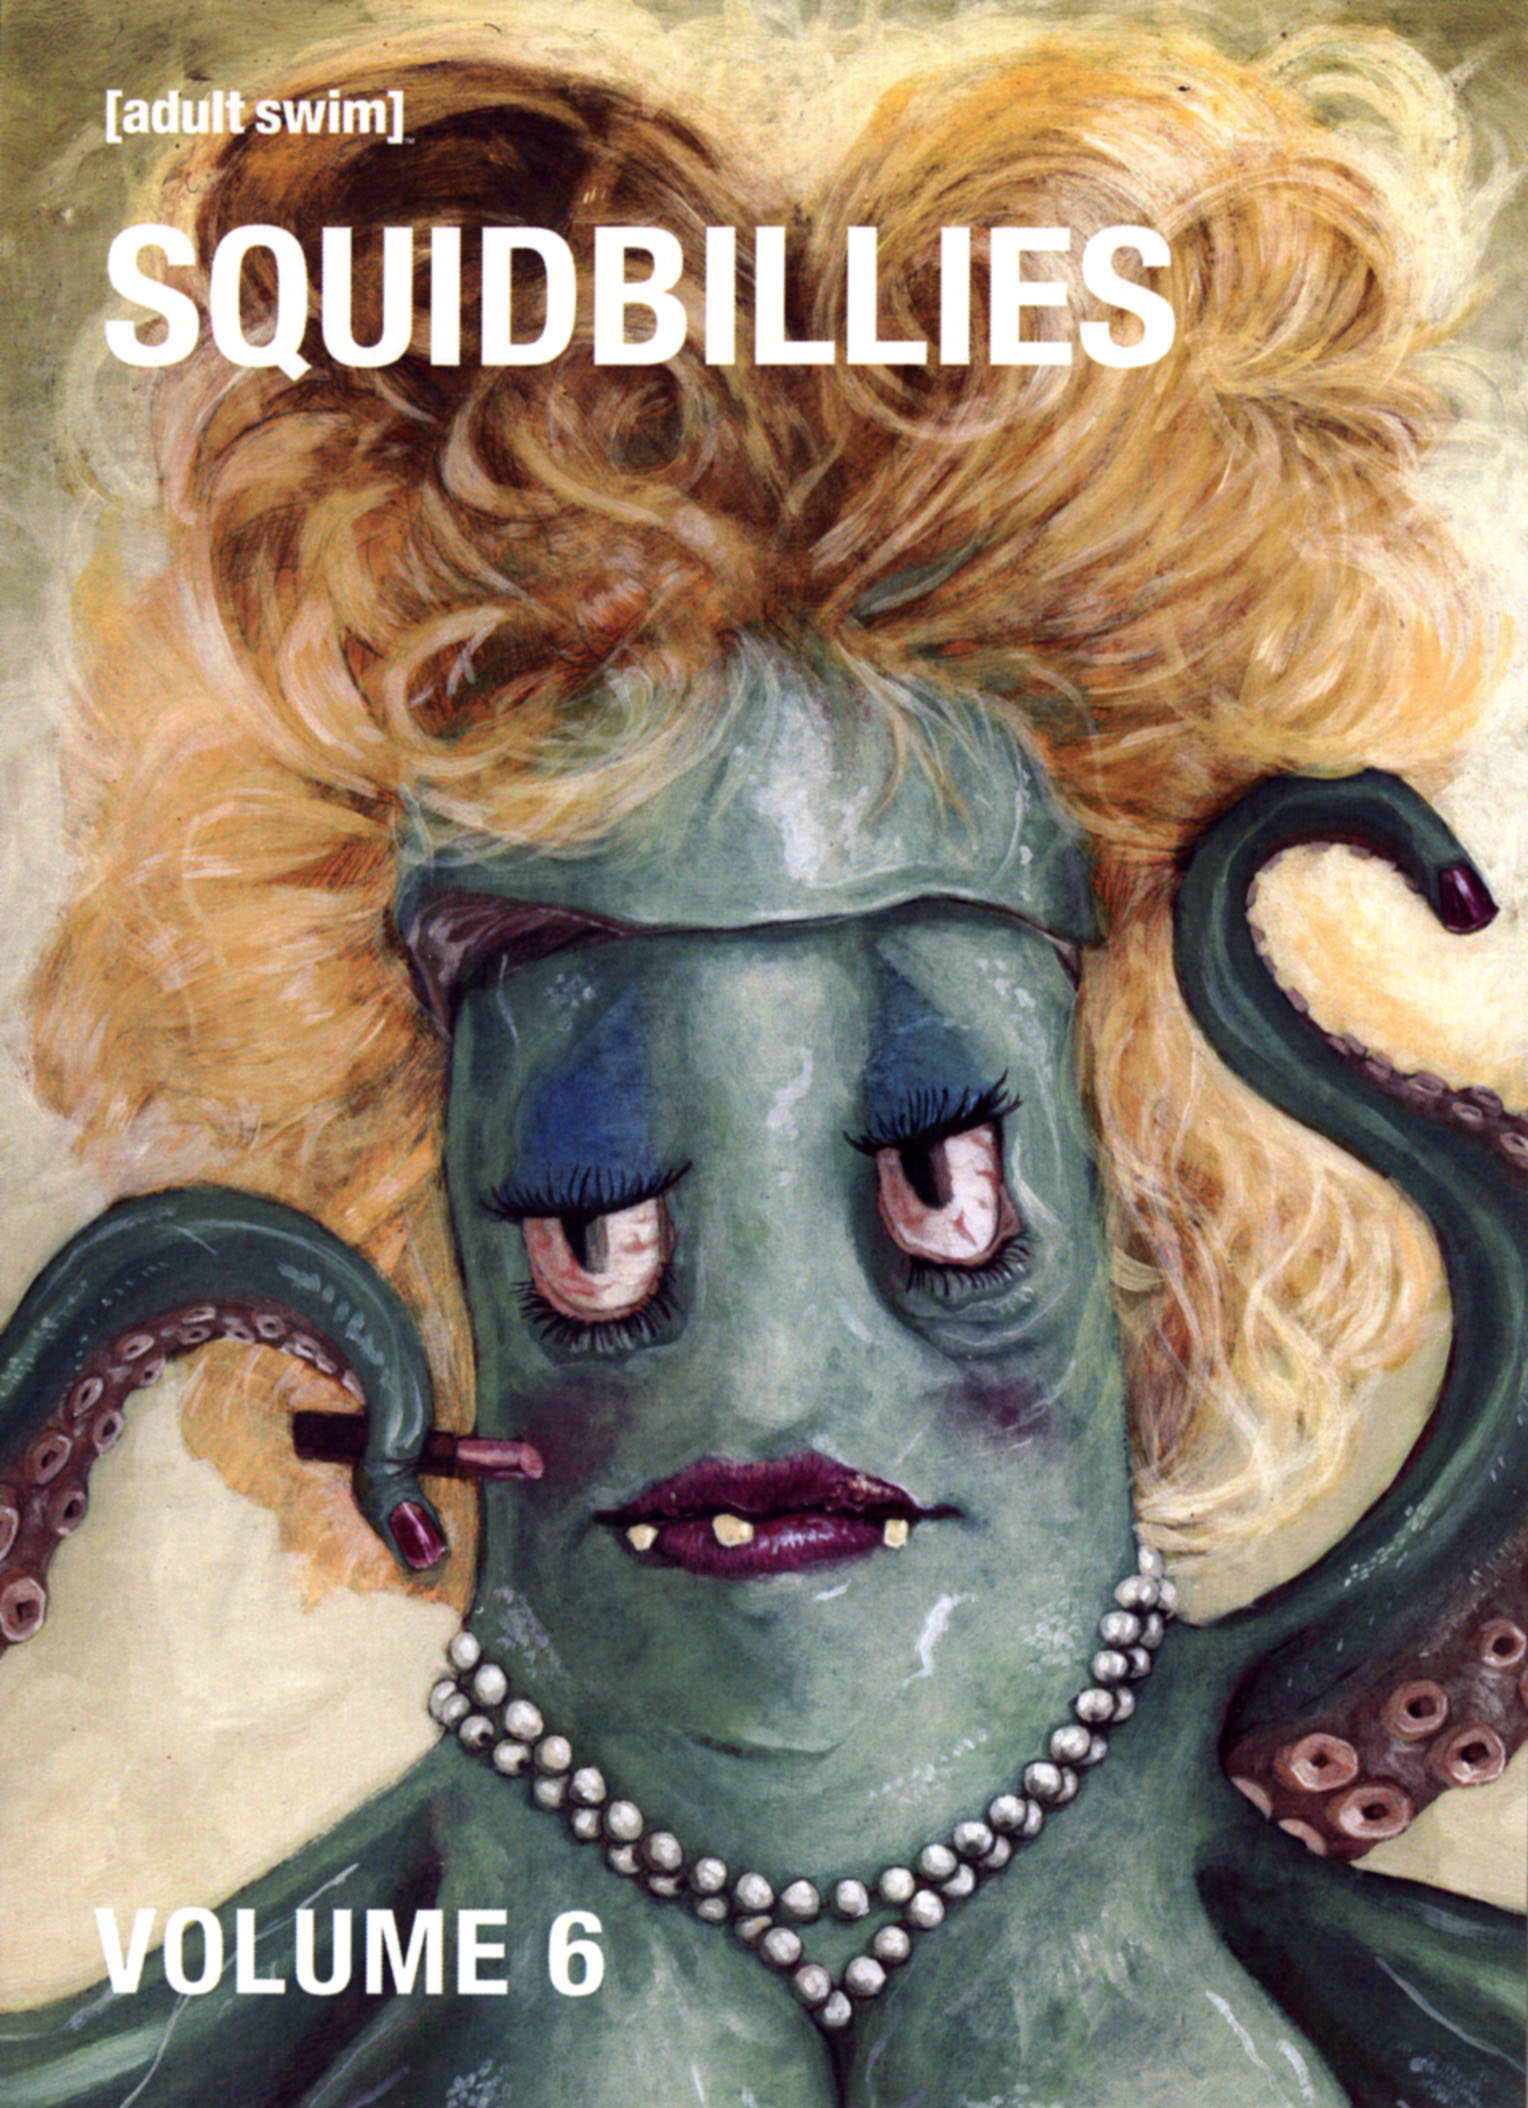 Squidbillies Vol 6 Dvd Best Buy 